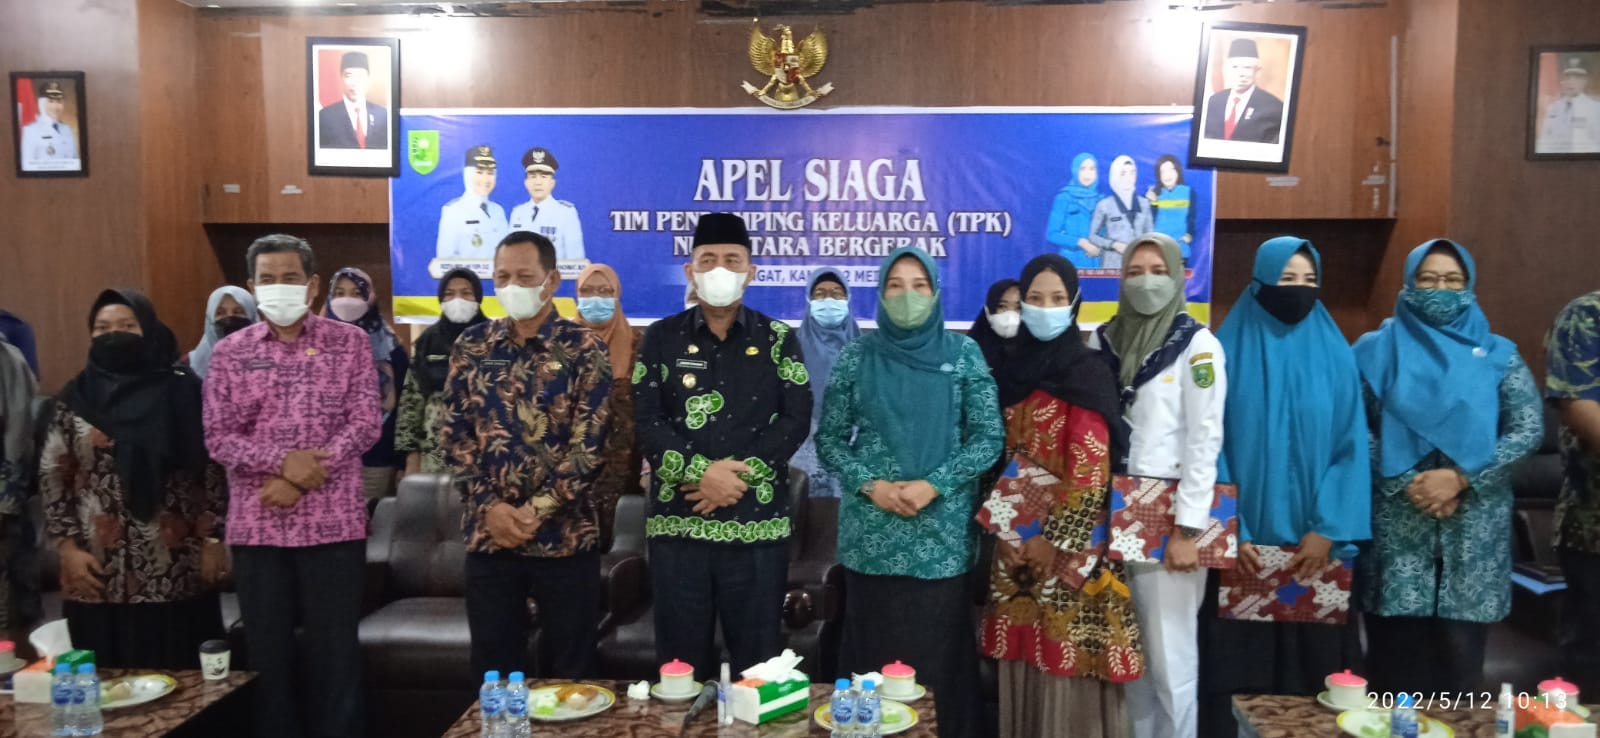 Wabup Junaidi Rachmat Ikuti Rangkaian Apel Siaga TPK Nusantara